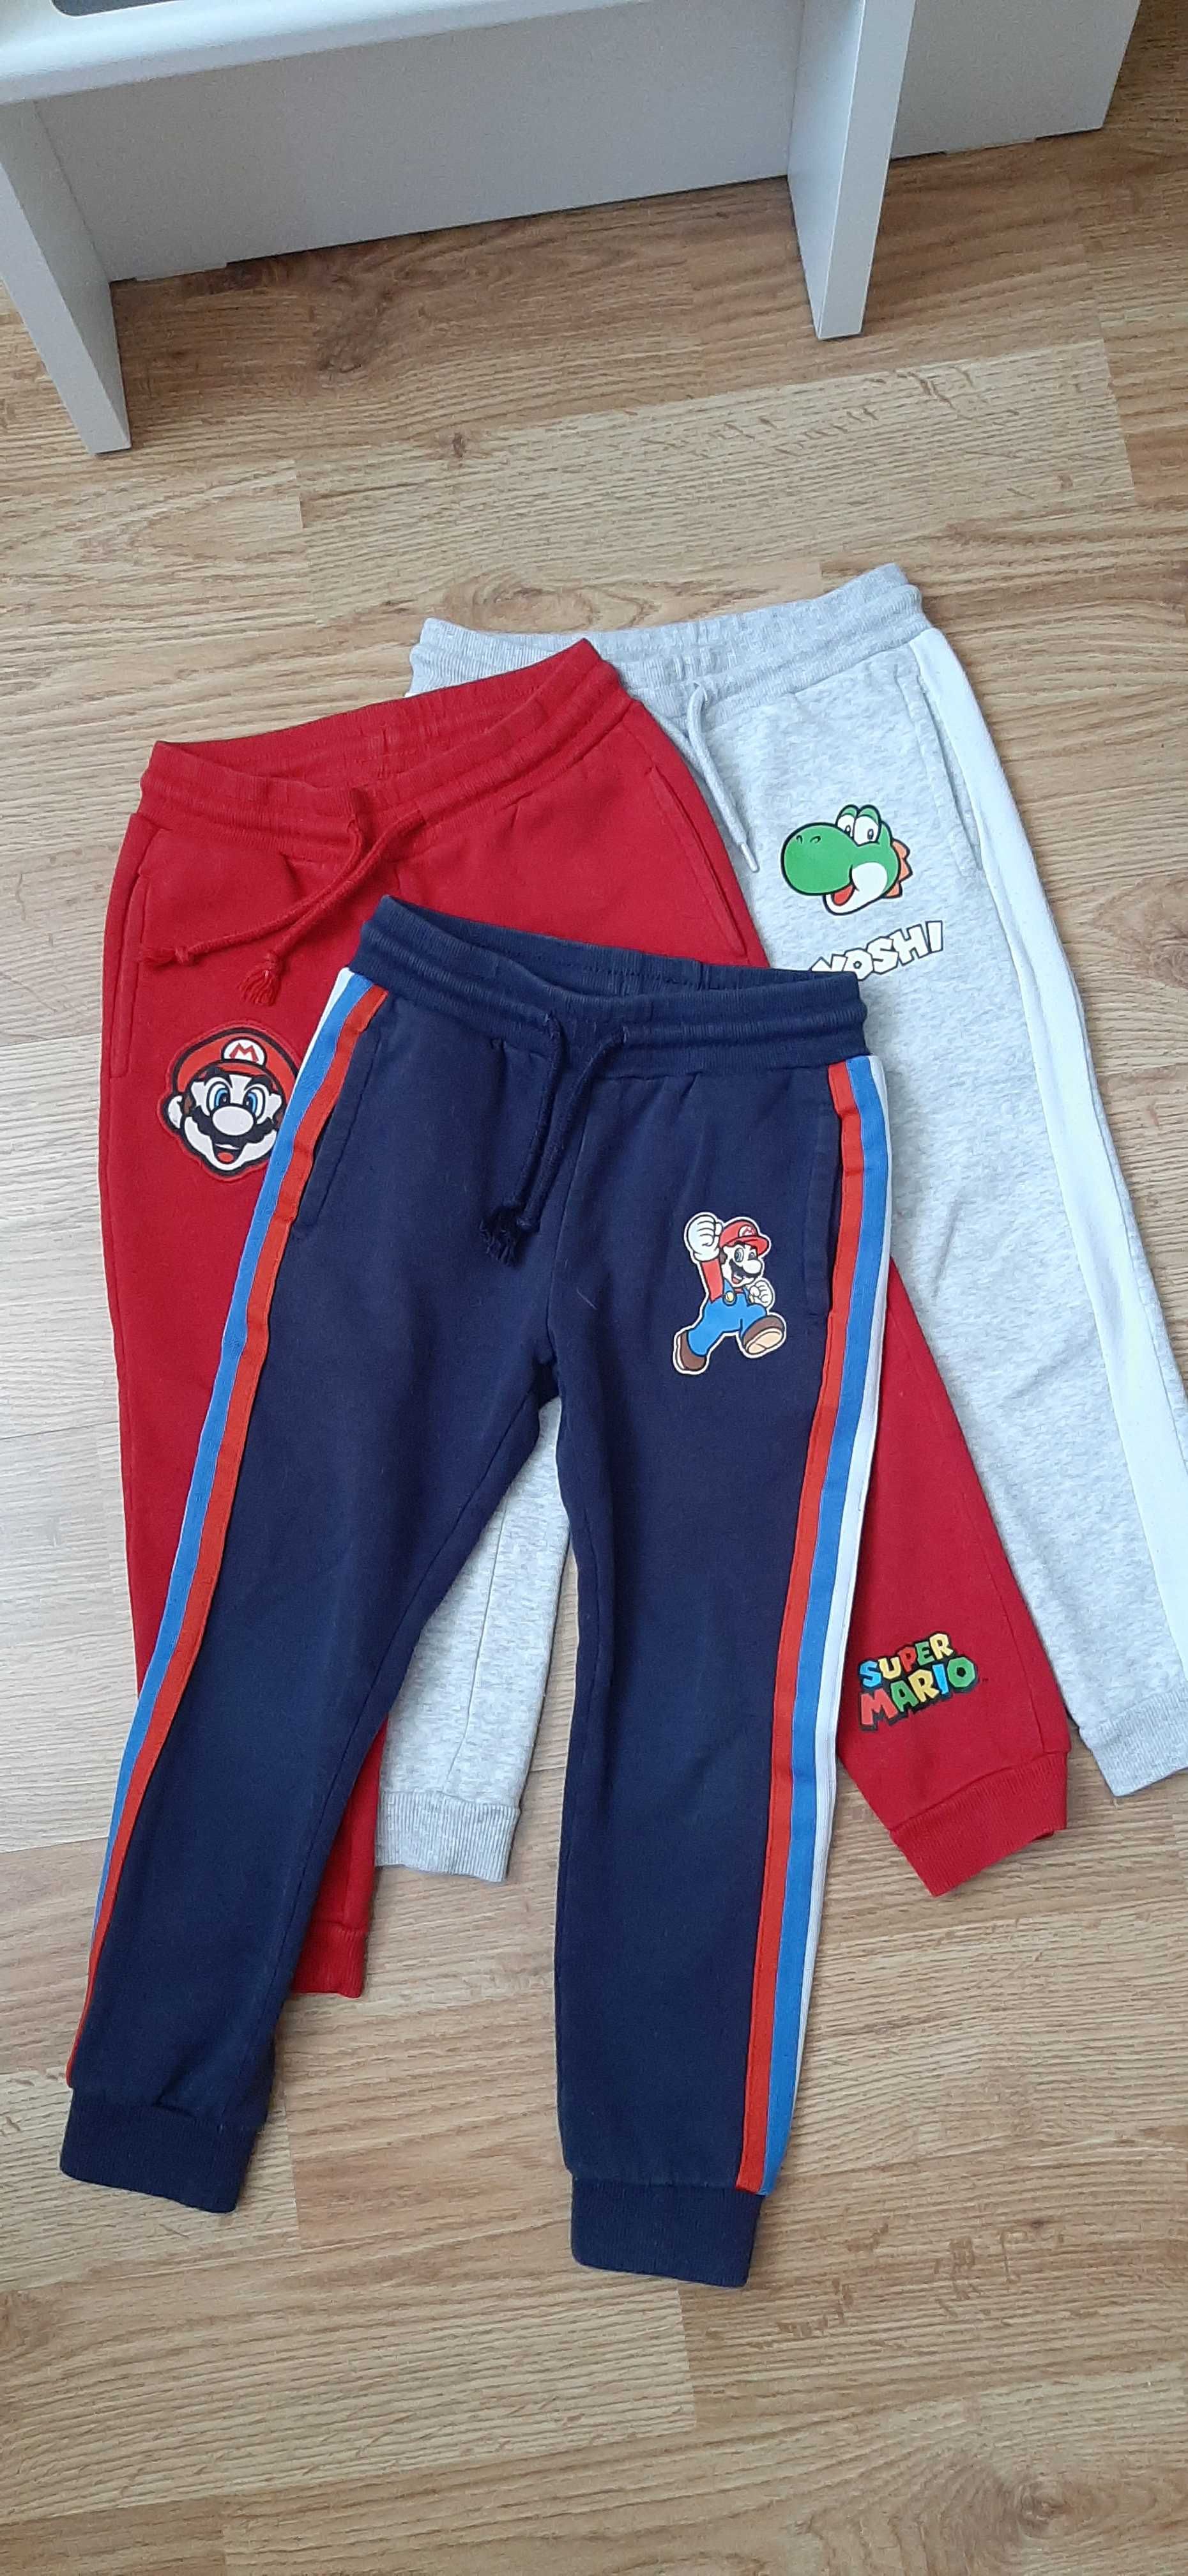 3 pary spodnie dresy chłopiece Super Mario r 110 c&a